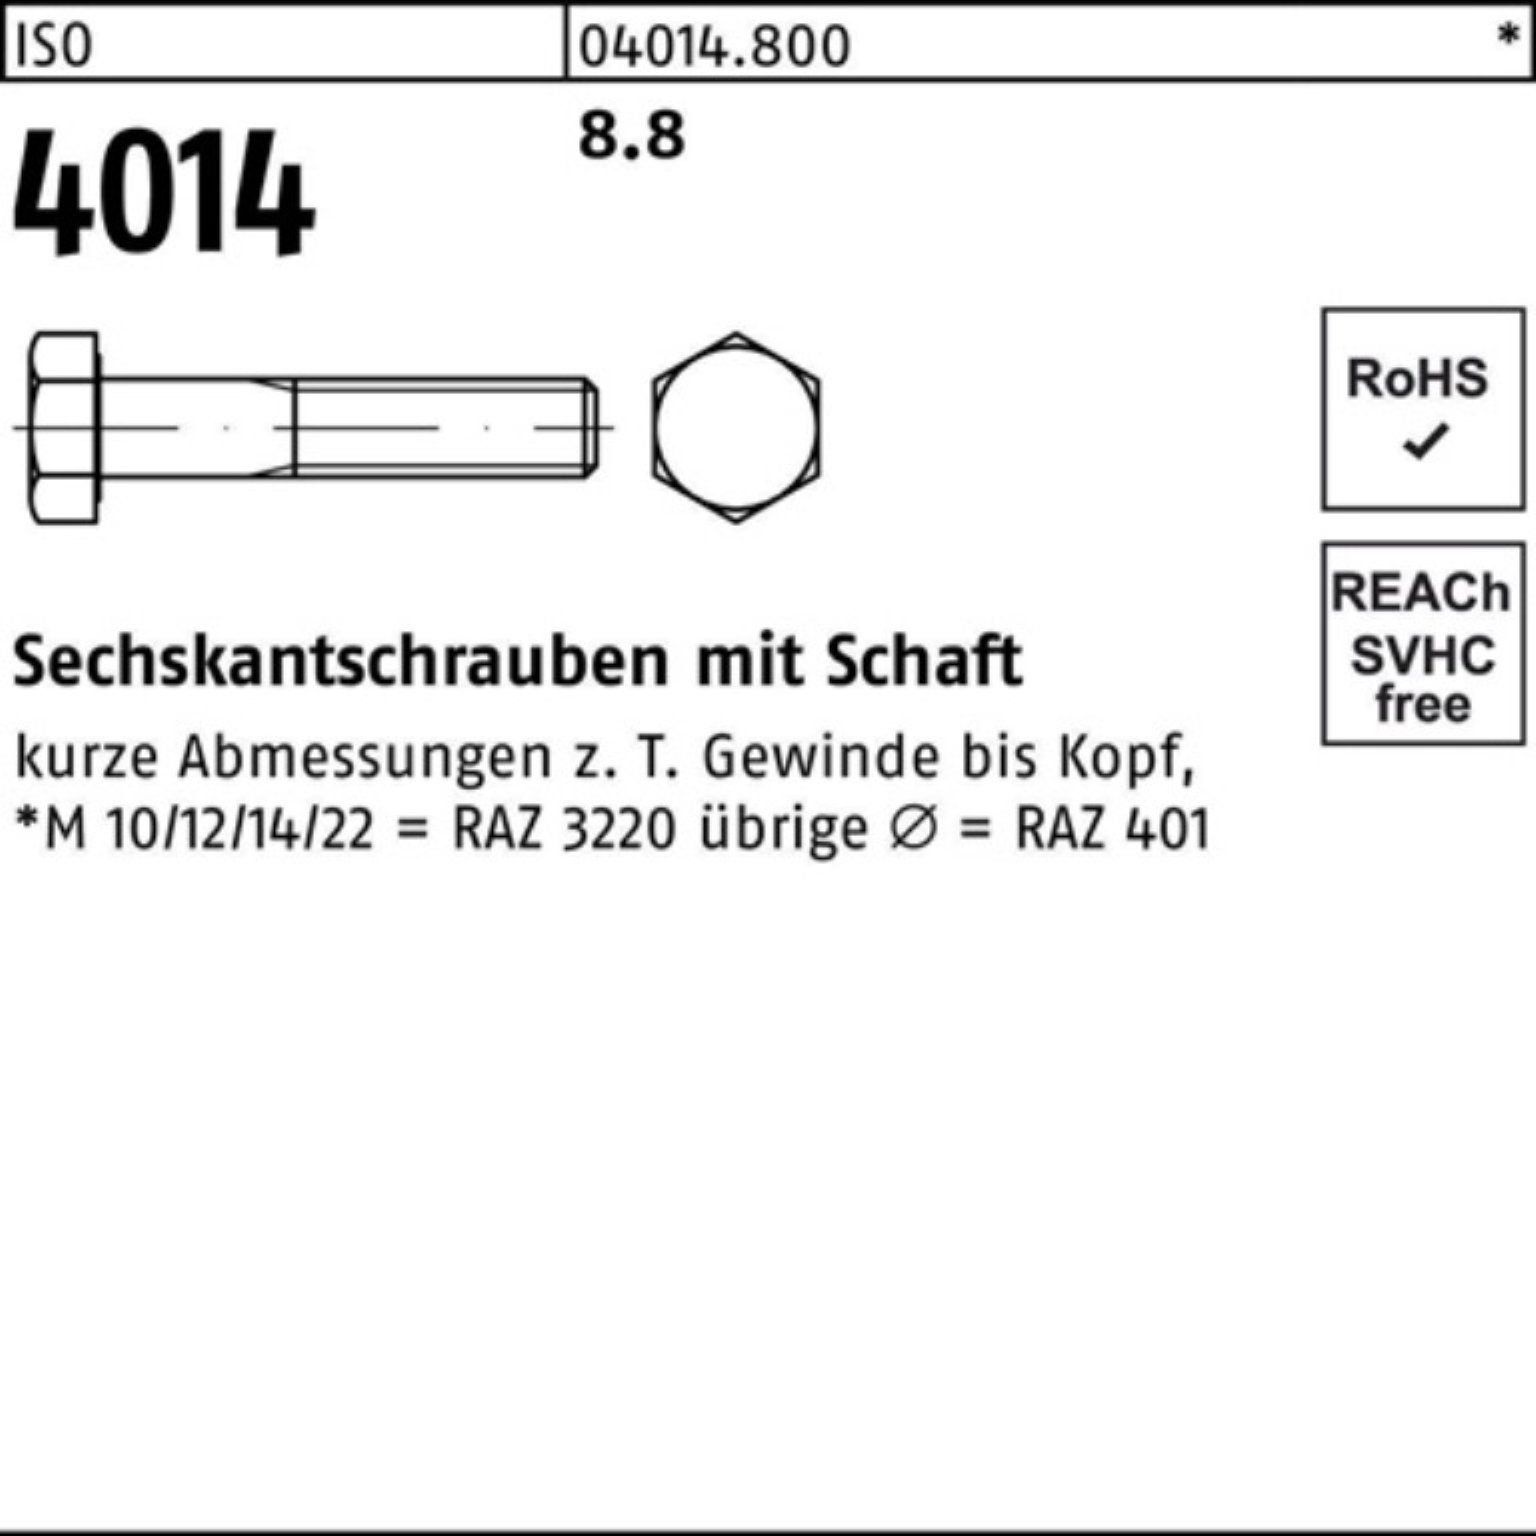 Pack 4014 Sechskantschraube Bufab ISO 290 100er Stück Sechskantschraube 8.8 1 Schaft M24x ISO